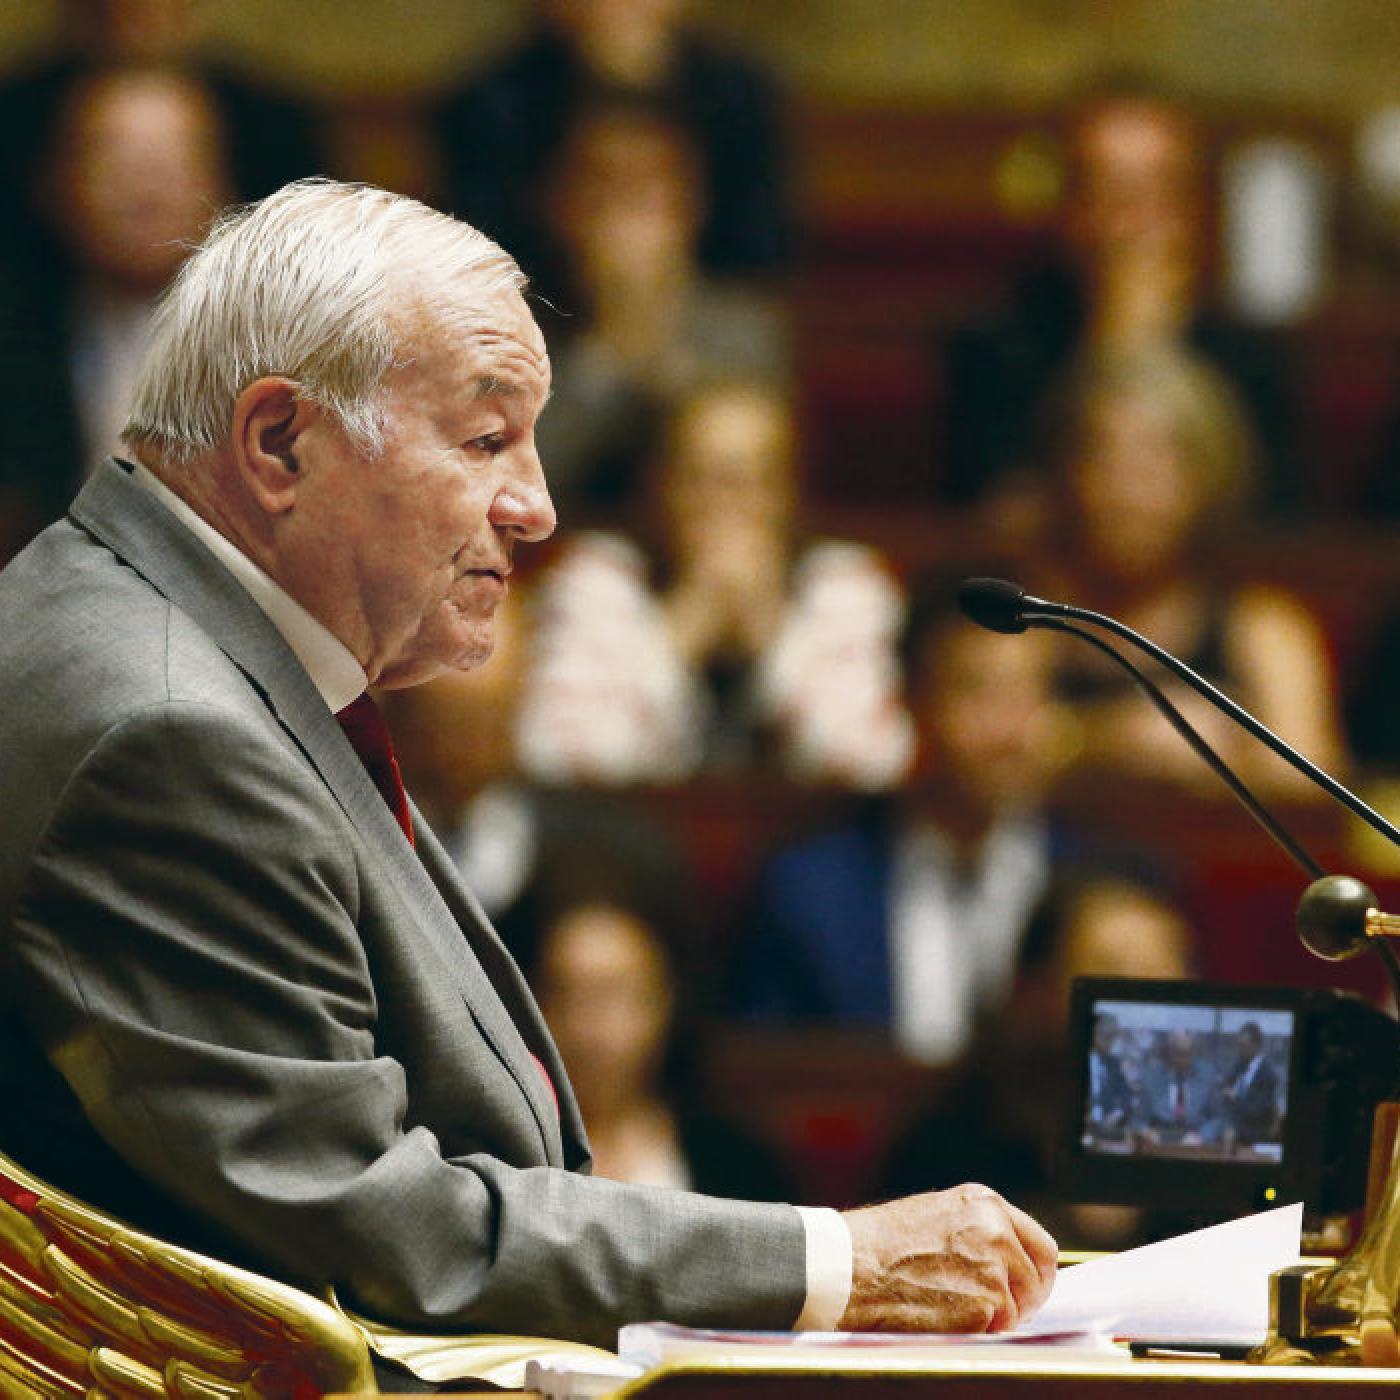 L’ancien maire de Cannes condamné pour dissimulation de patrimoine et fraude fiscale